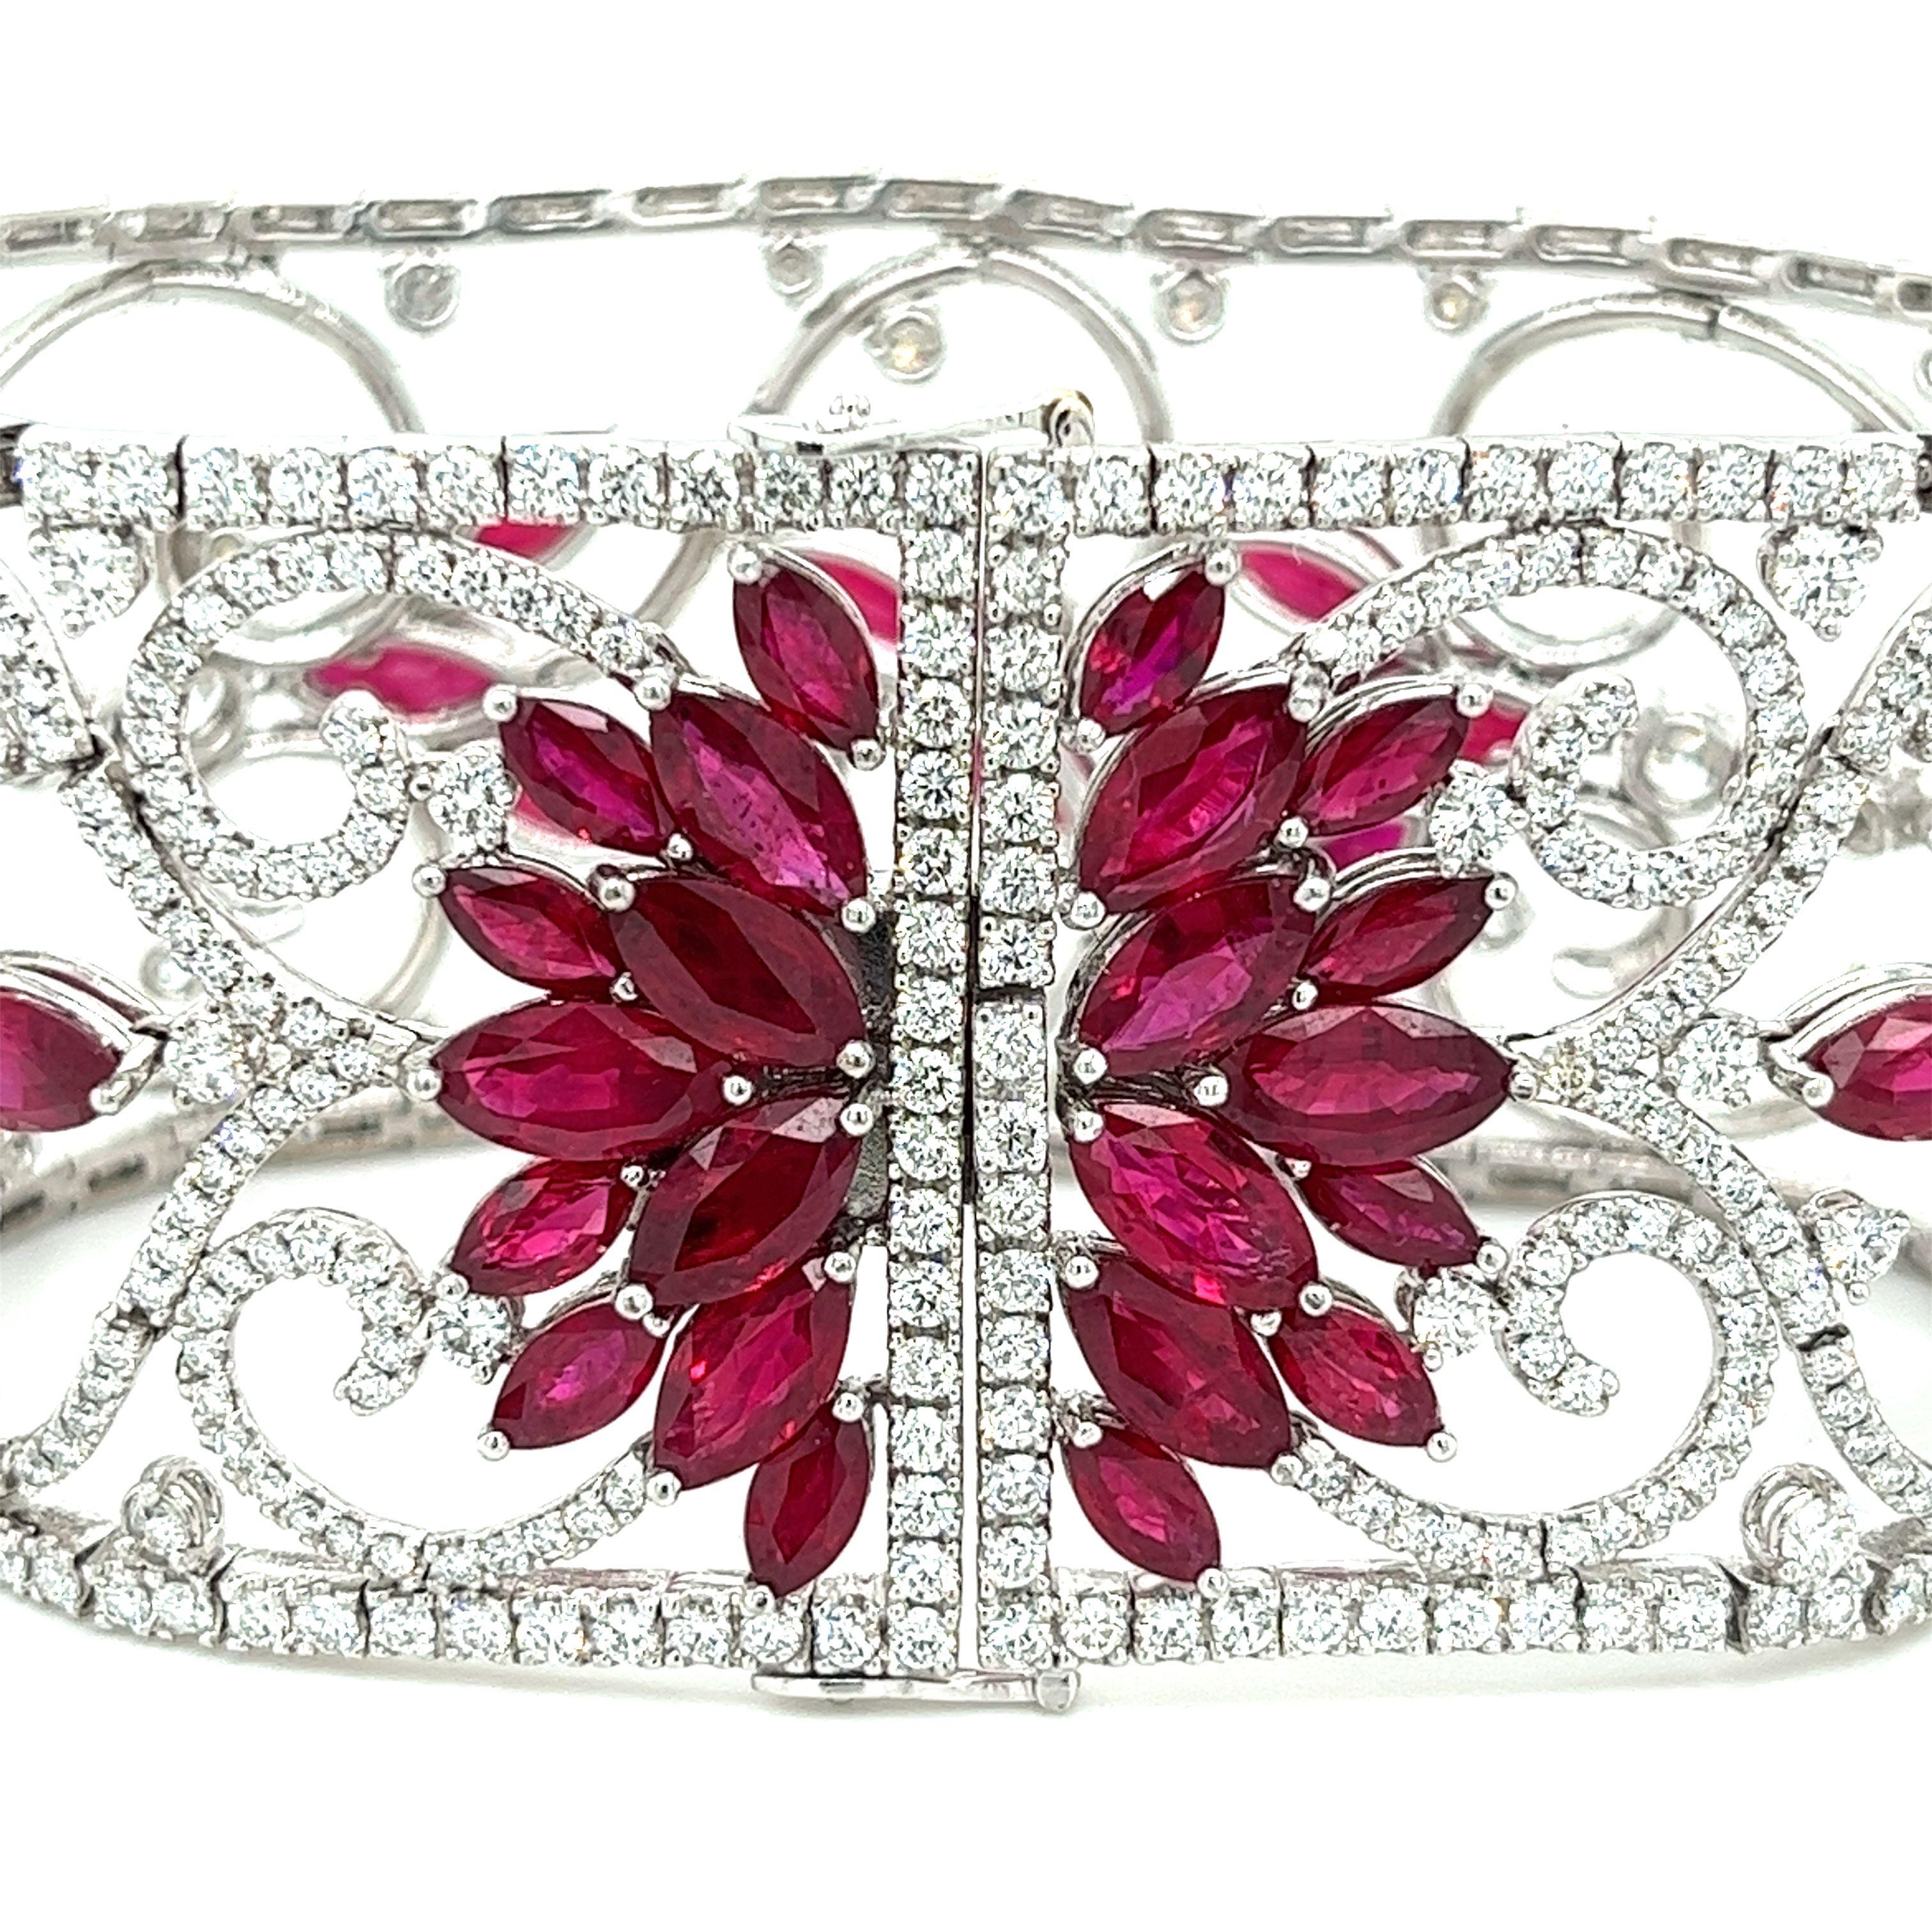 Erleben Sie die unvergleichliche Schönheit und Raffinesse dieses filigranen Armbands mit Rubinen und Diamanten im Art-Déco-Stil. Dieses luxuriöse Schmuckstück mit zeitloser Eleganz ist mit 35 Karat Rubinen und 11 Karat Diamanten in einem dynamischen